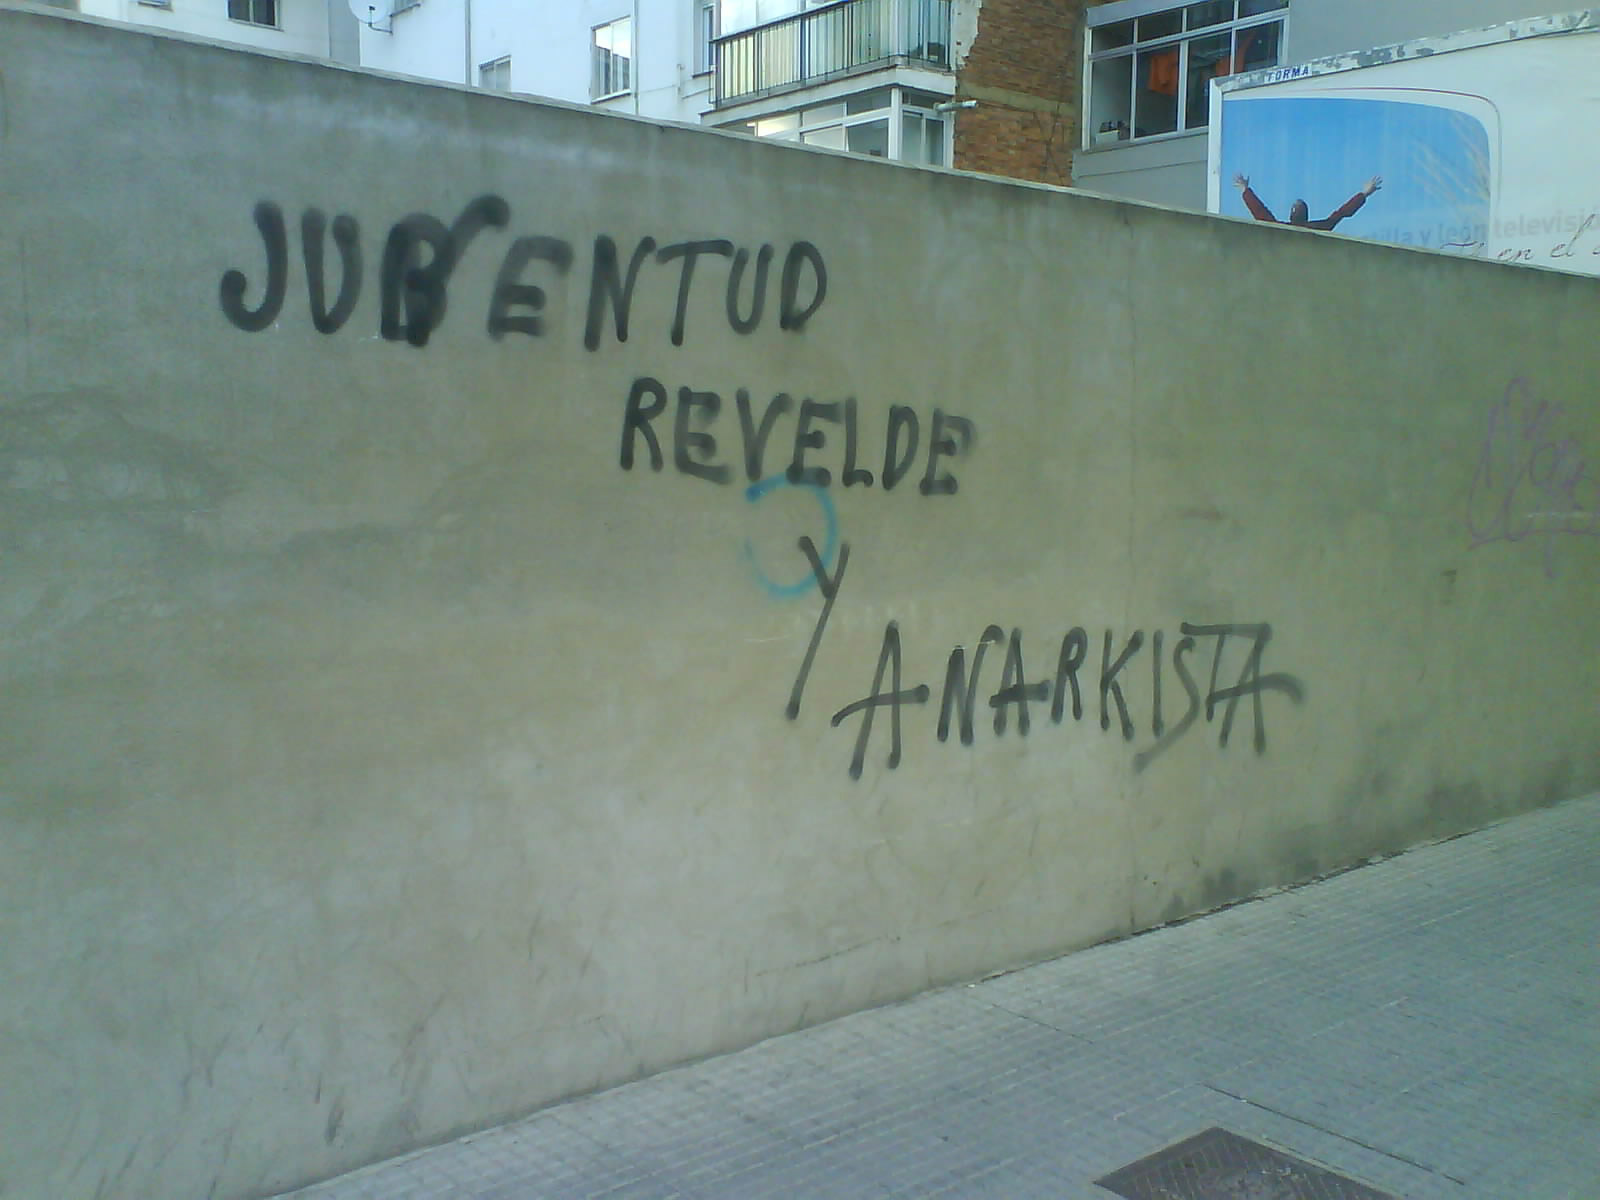 [Juventud-rebelde-y-anarkist.jpg]